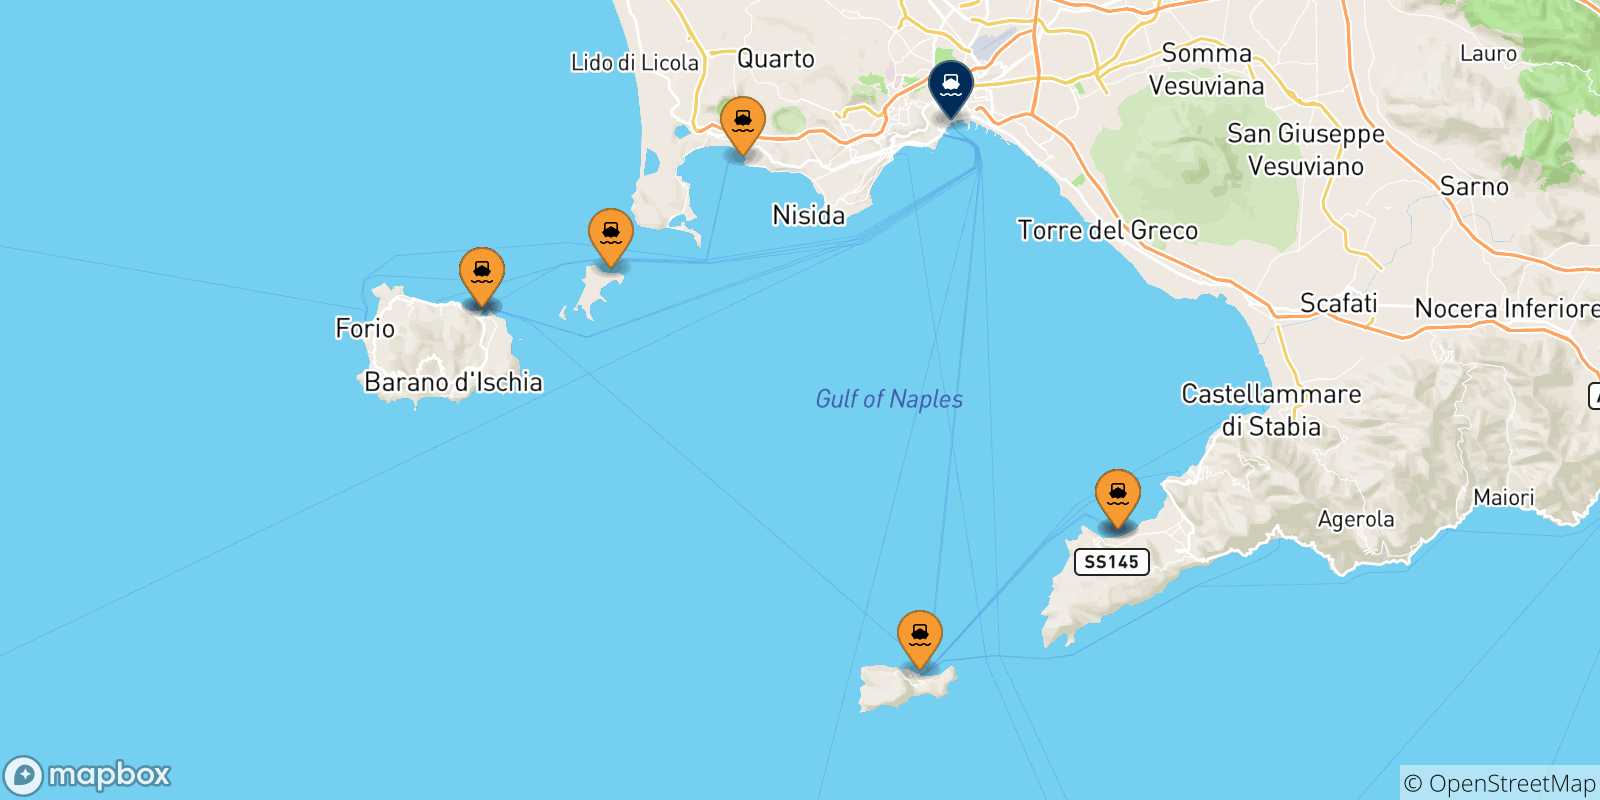 Mappa delle possibili rotte tra l'Italia e Napoli Beverello